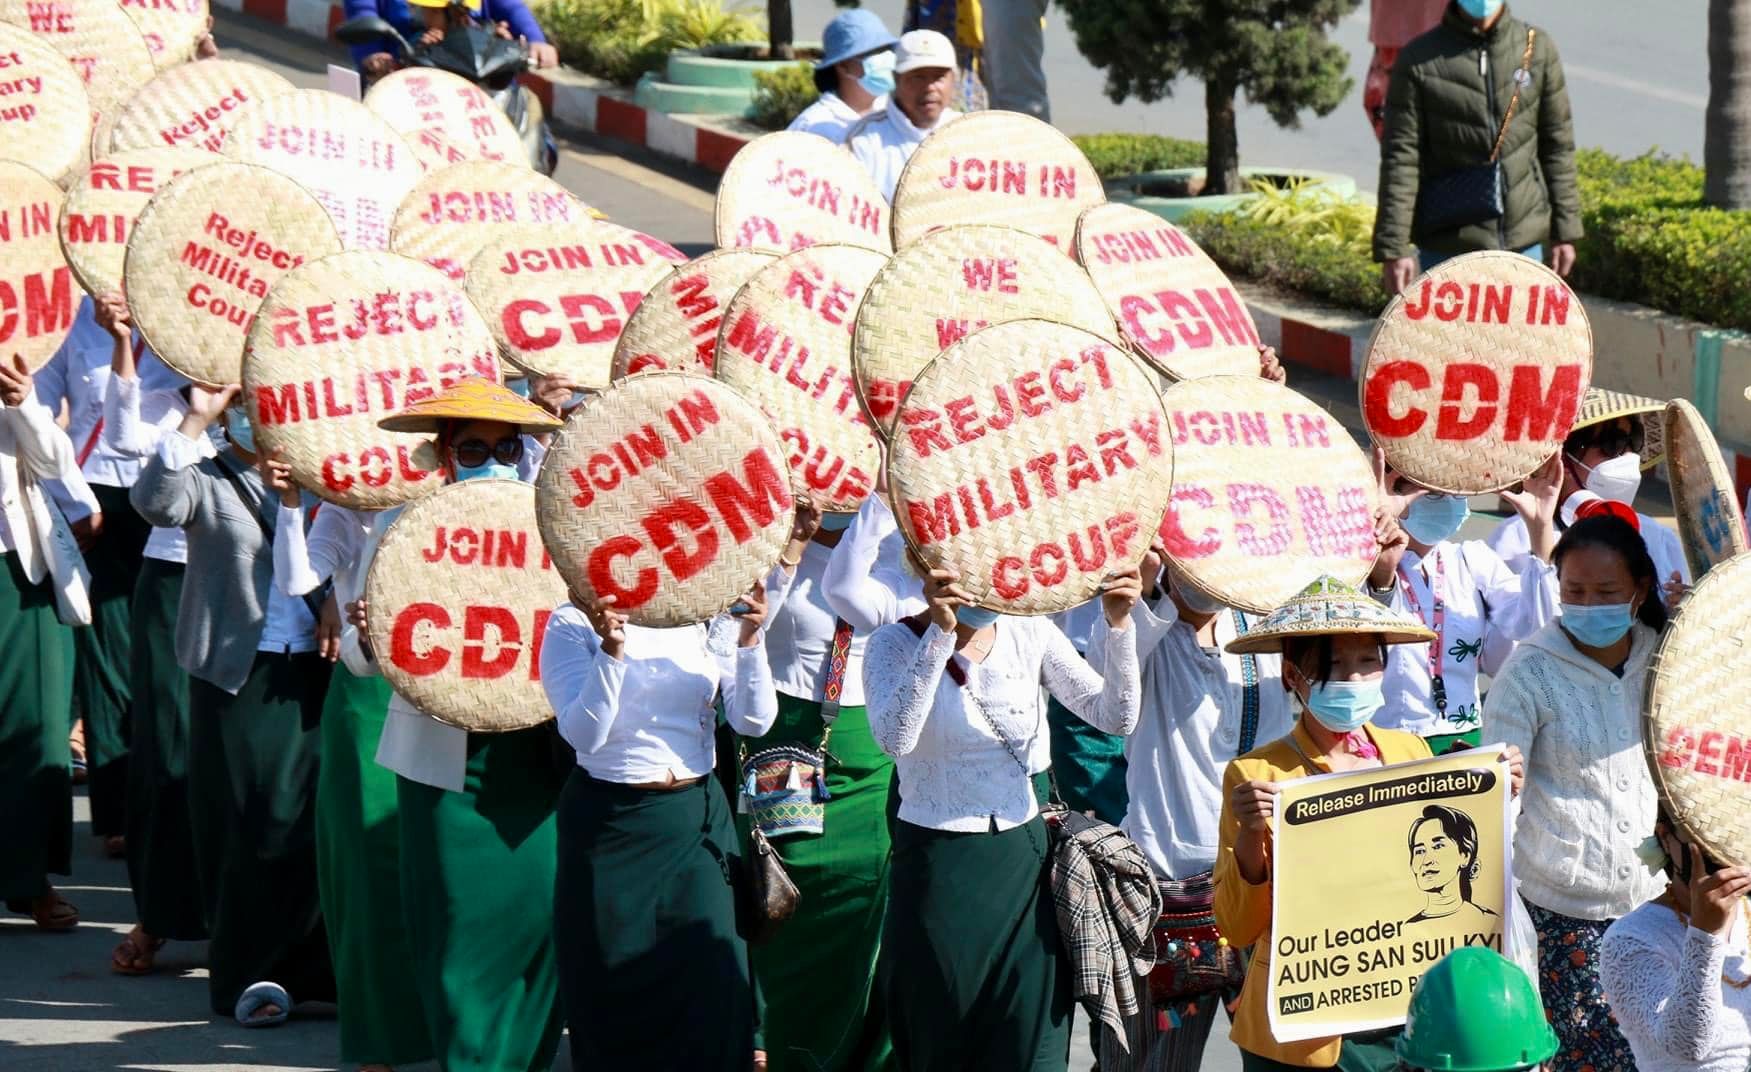 (စစ်အာဏာရှင်ဆန့်ကျင်ရေးအဖြစ် ဆရာ၊ဆရာမများက CDM ပြုလုပ်၍ ချီတက်ဆန္ဒပြနေသည် ကို ၂၀၂၁ဖေဖော်ဝါရီ ၂၃ရက်က တွေ့ရစဉ်၊ ဓာတ်ပုံ - CJ)